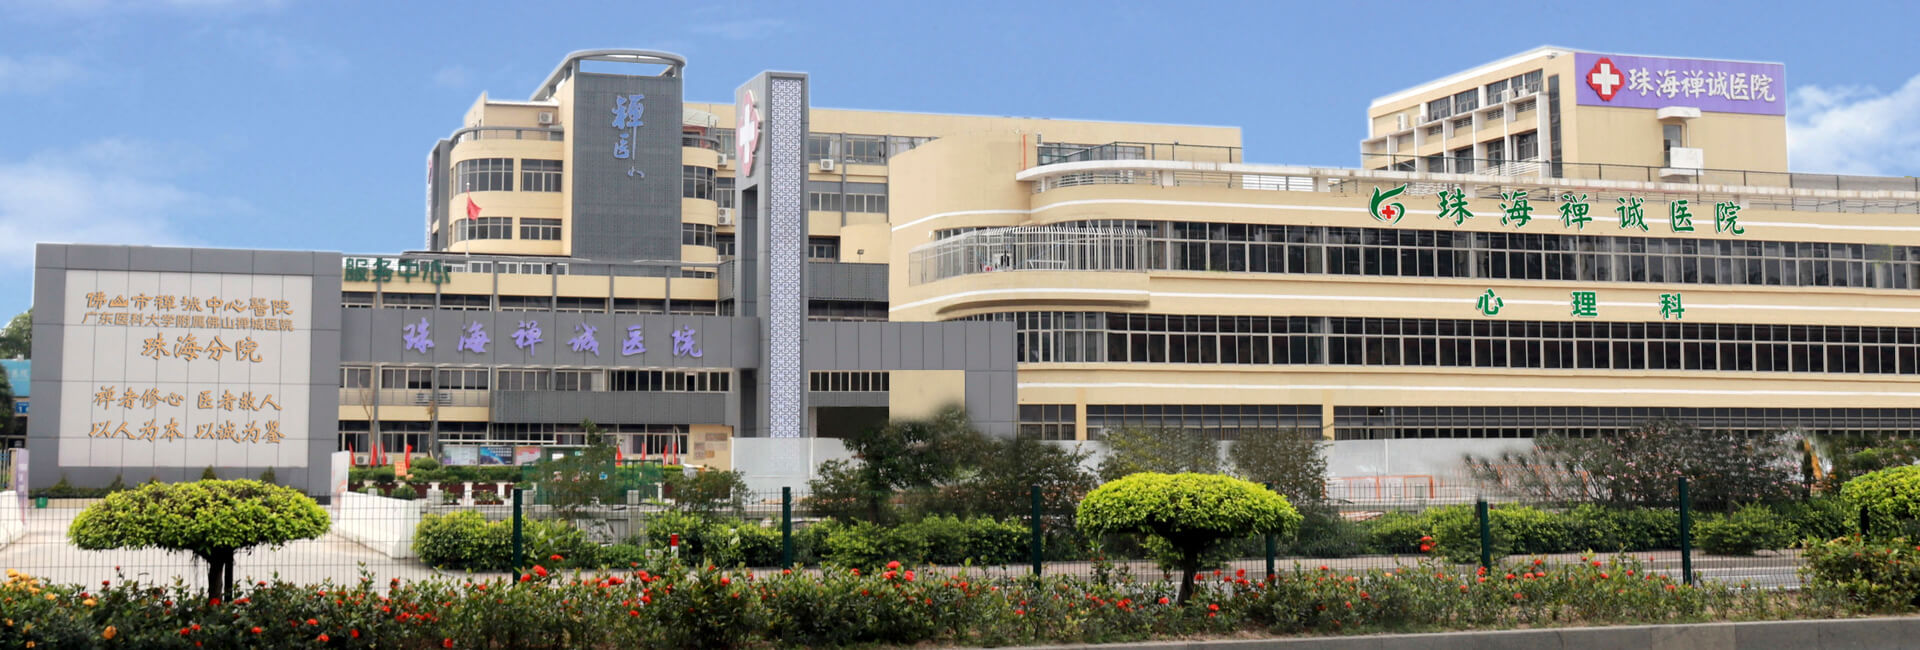 禅城医院